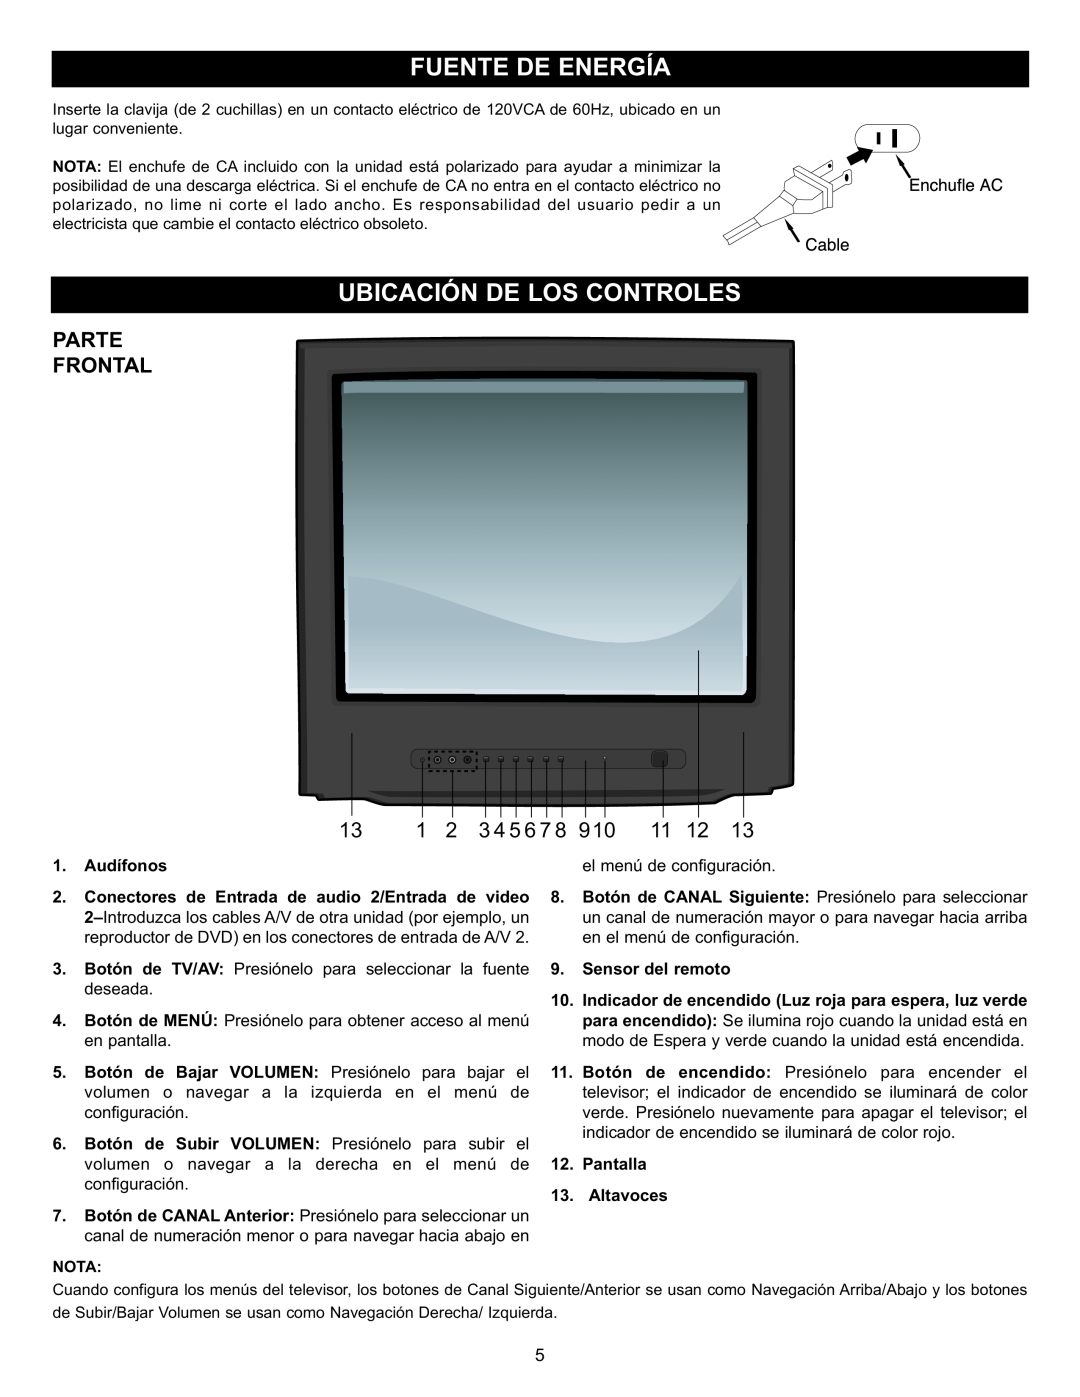 Memorex MT2028D-BLK manual Parte Frontal, Audífonos, Conectores de Entrada de audio 2/Entrada de video, Altavoces 